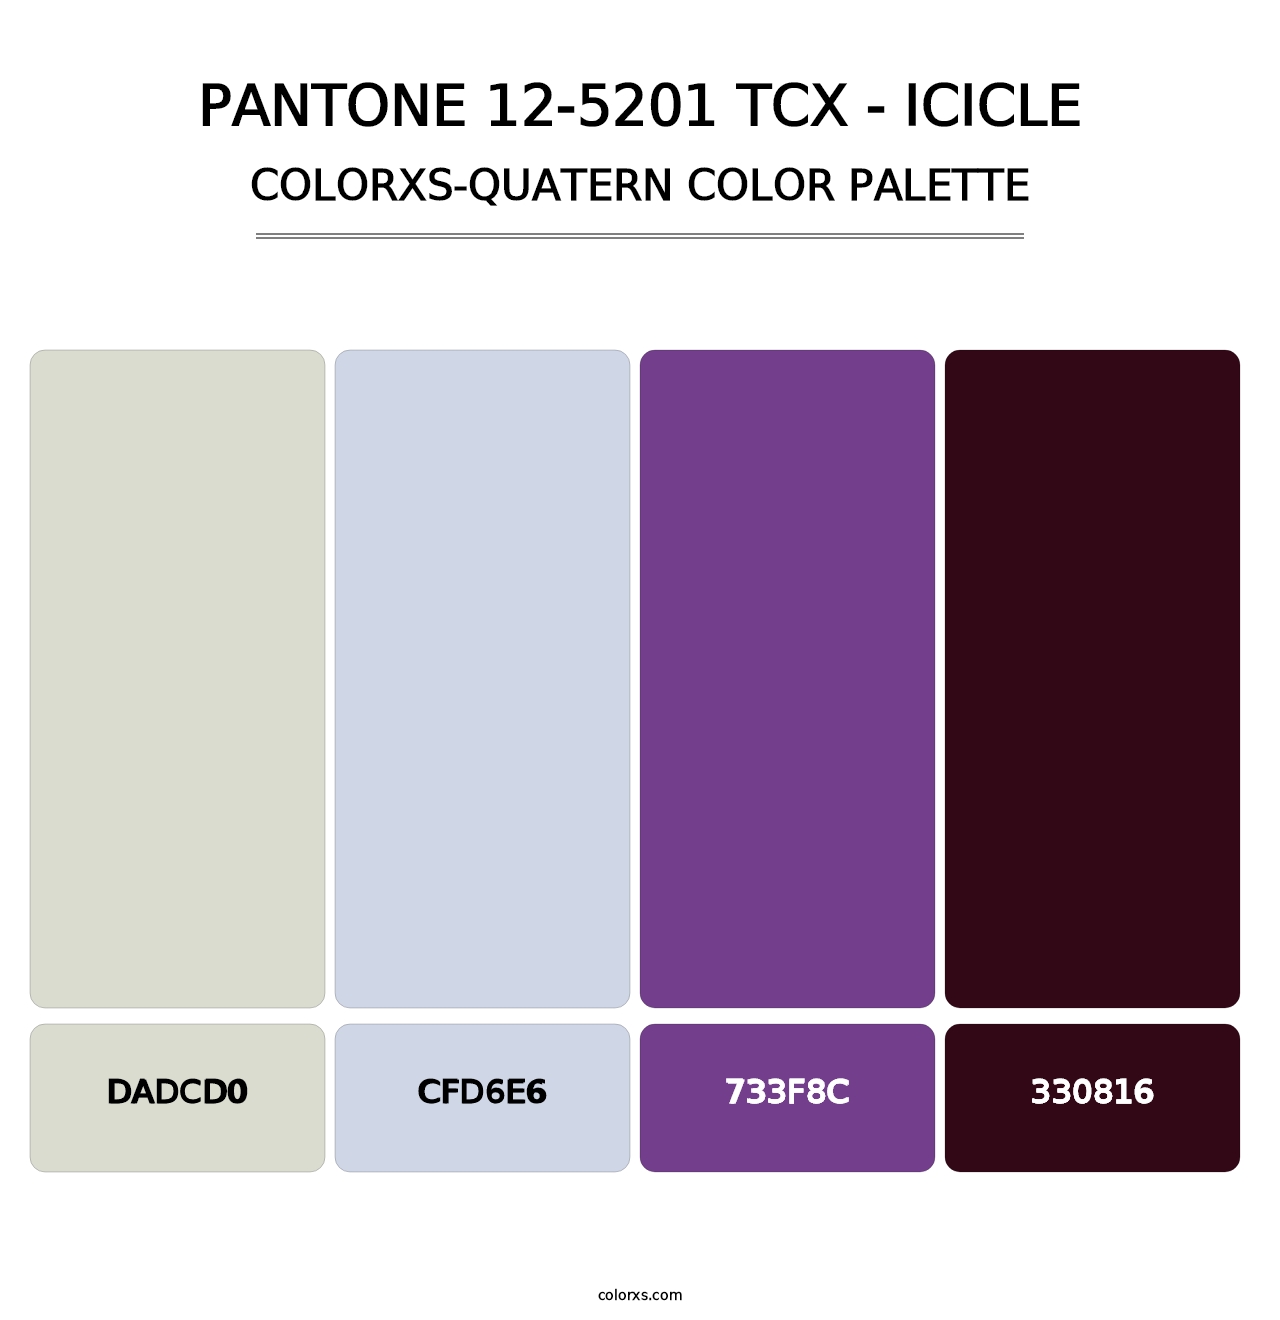 PANTONE 12-5201 TCX - Icicle - Colorxs Quatern Palette